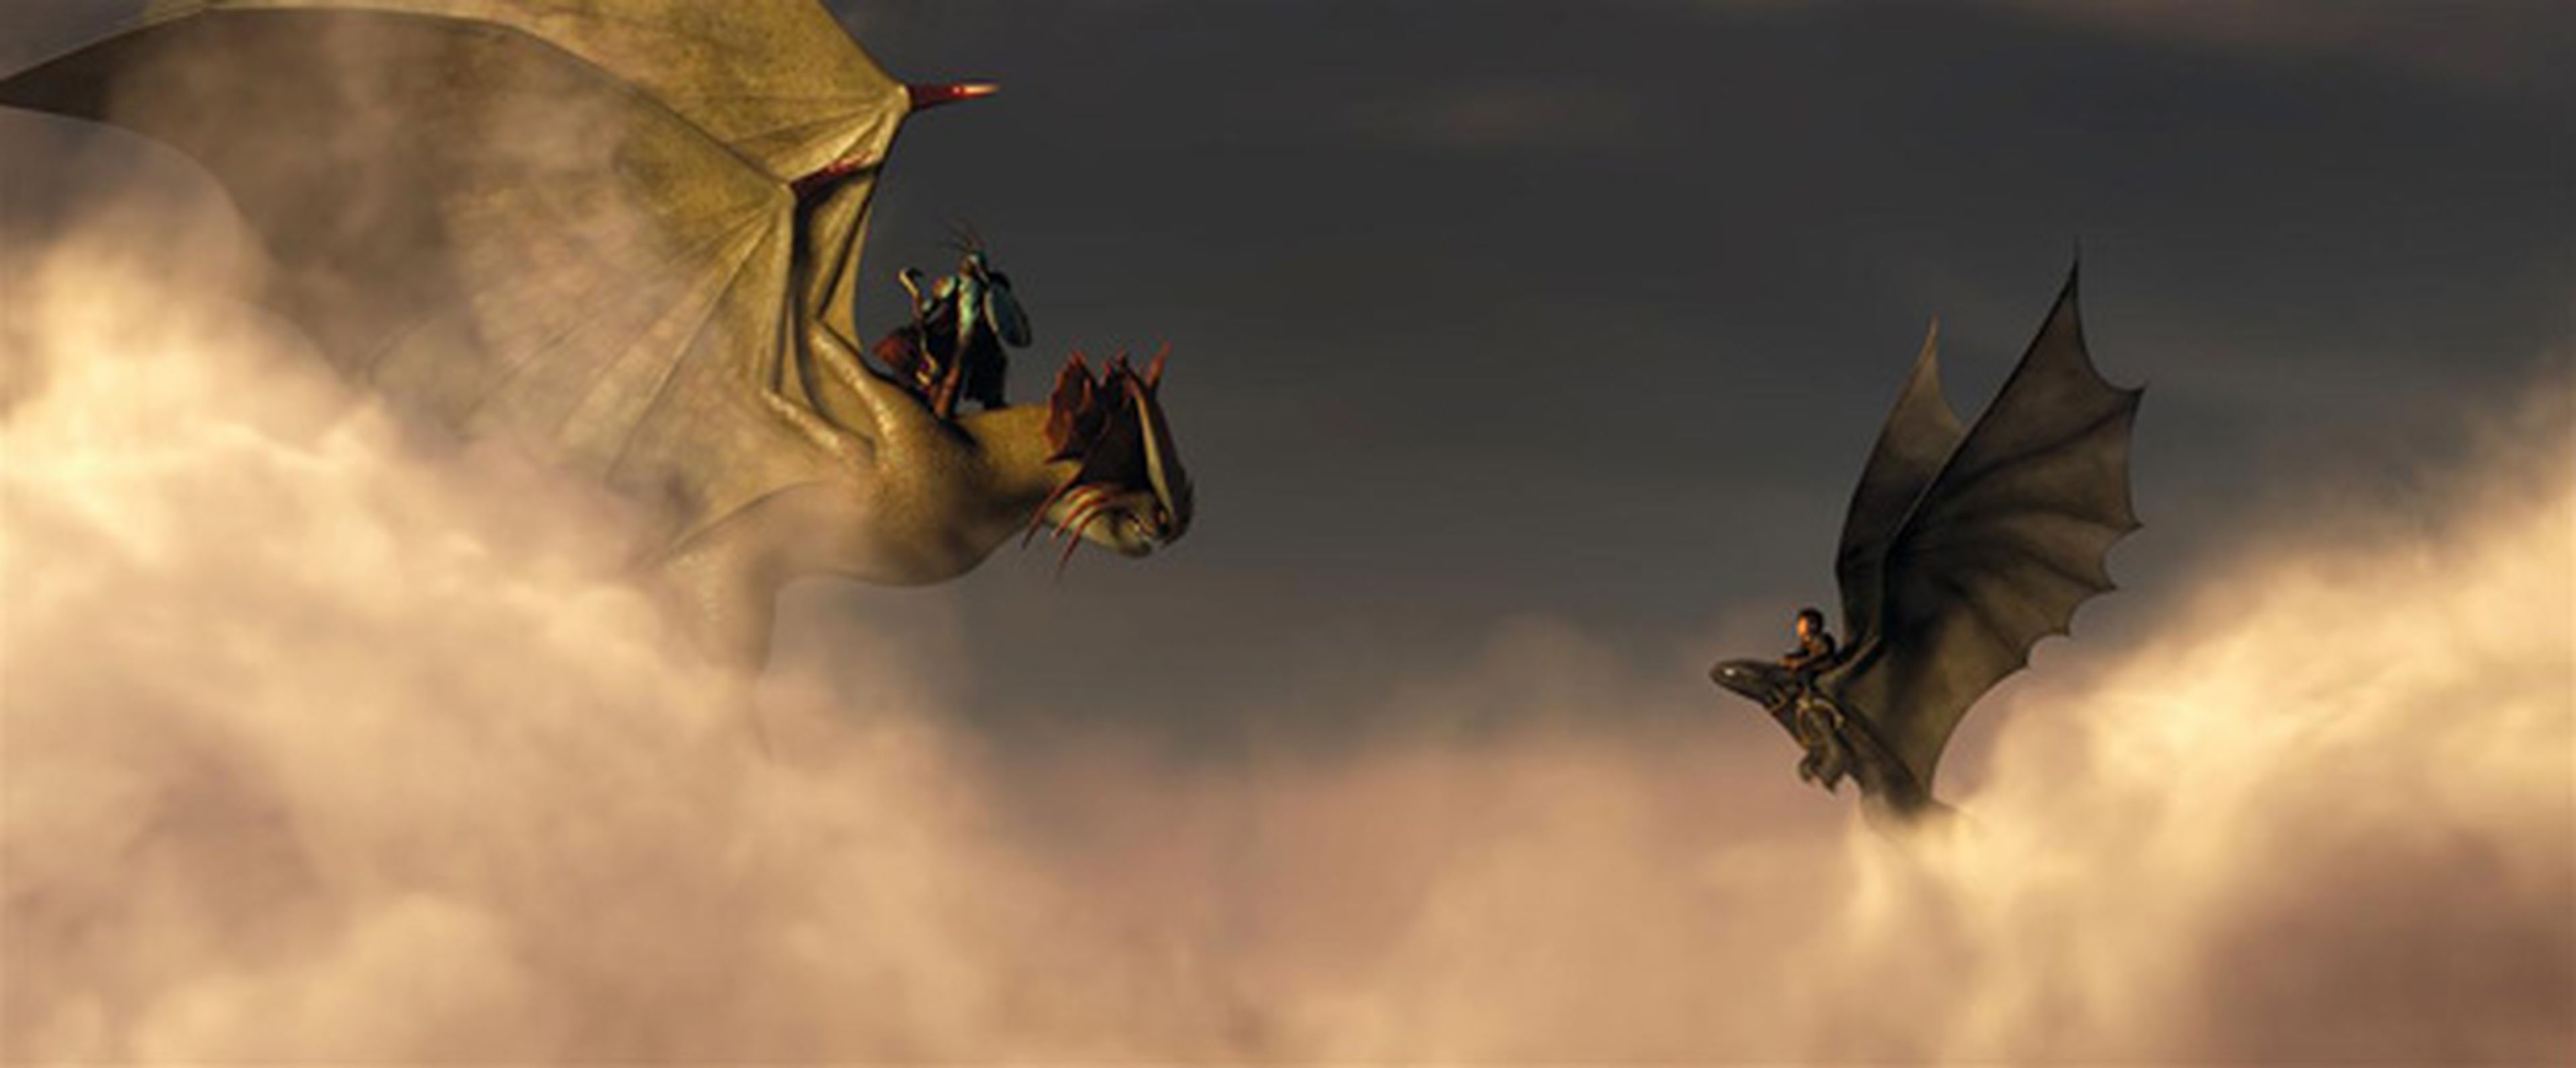 Exclusiva: nuevo vídeo de Cómo entrenar a tu dragón 2